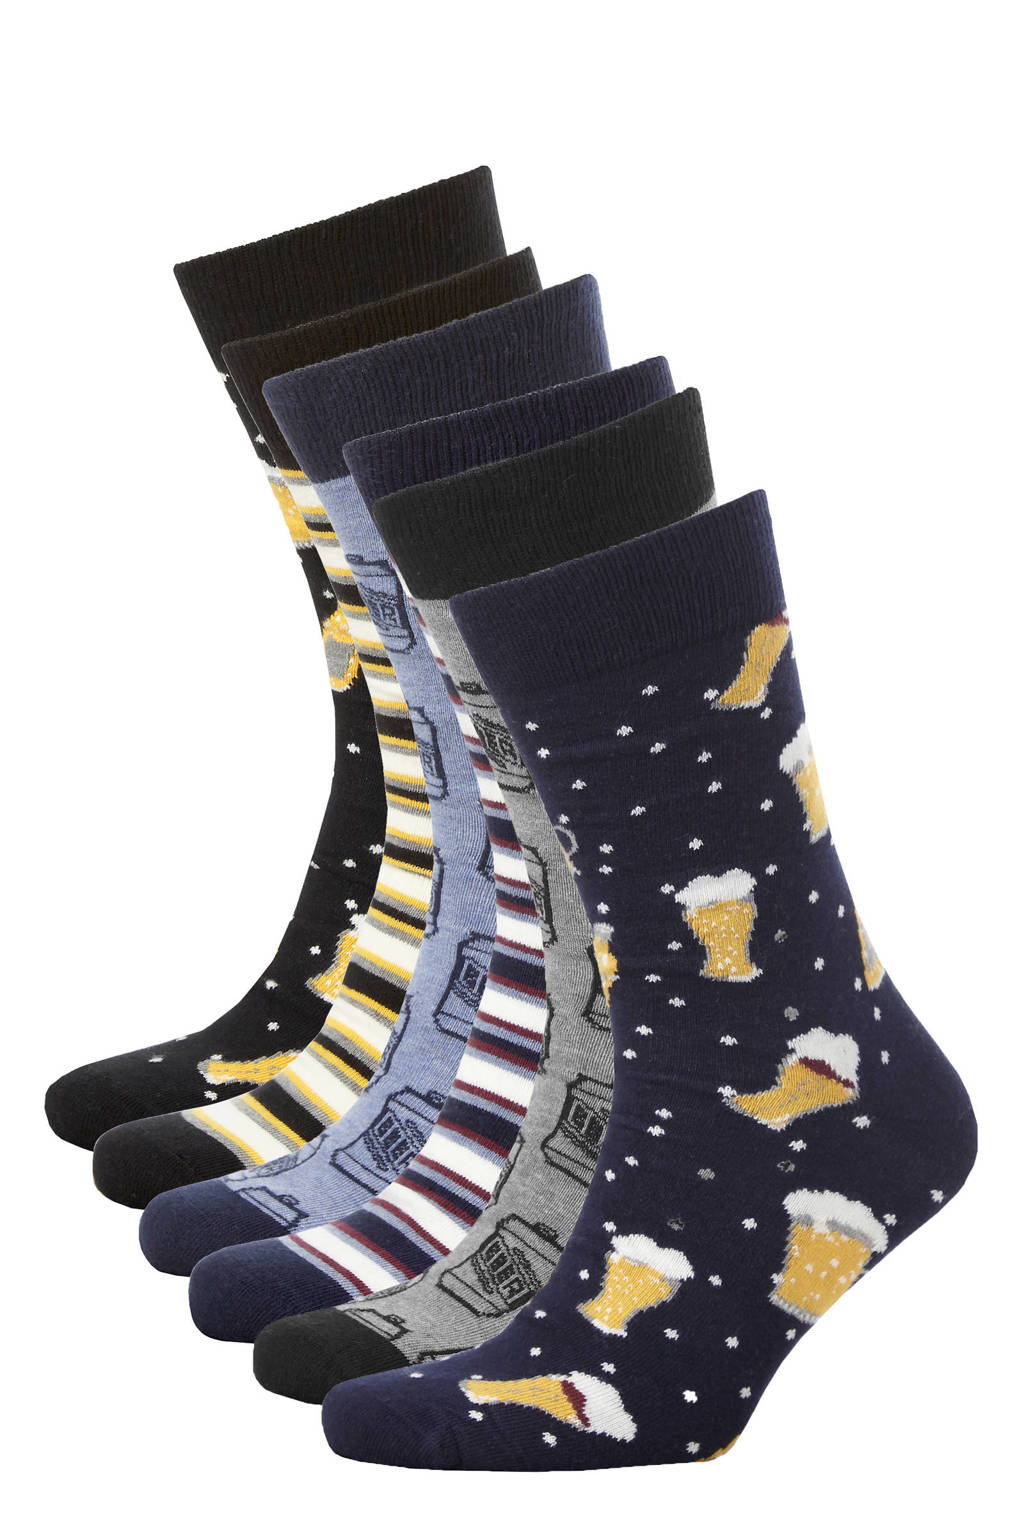 Apollo sokken met all-over print - set van 6 multi, Blauw/geel/grijs